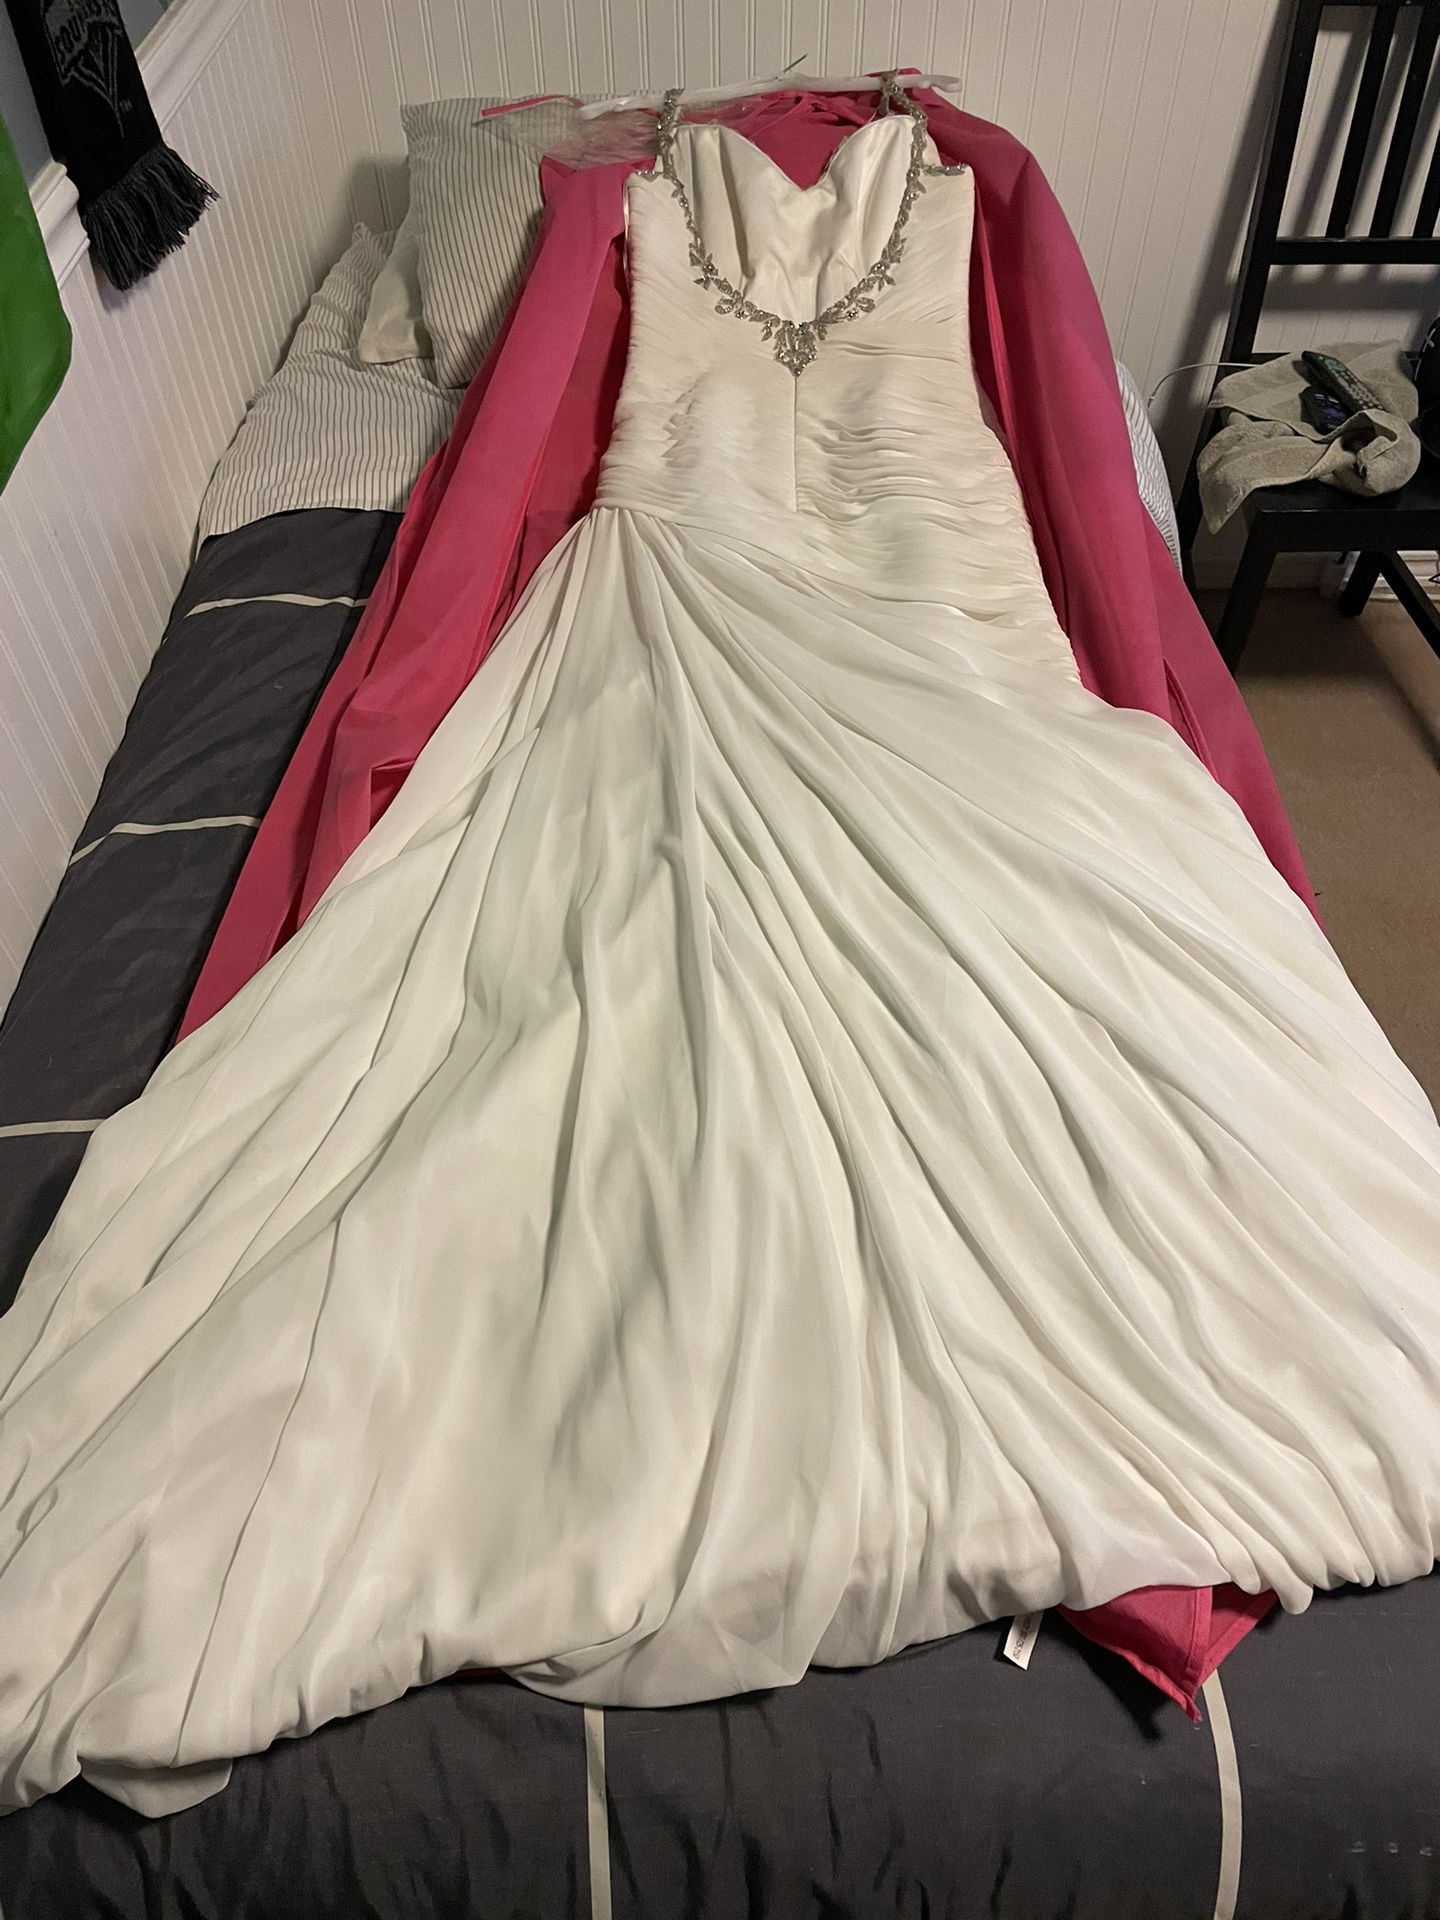 Size 10 Wedding Dress